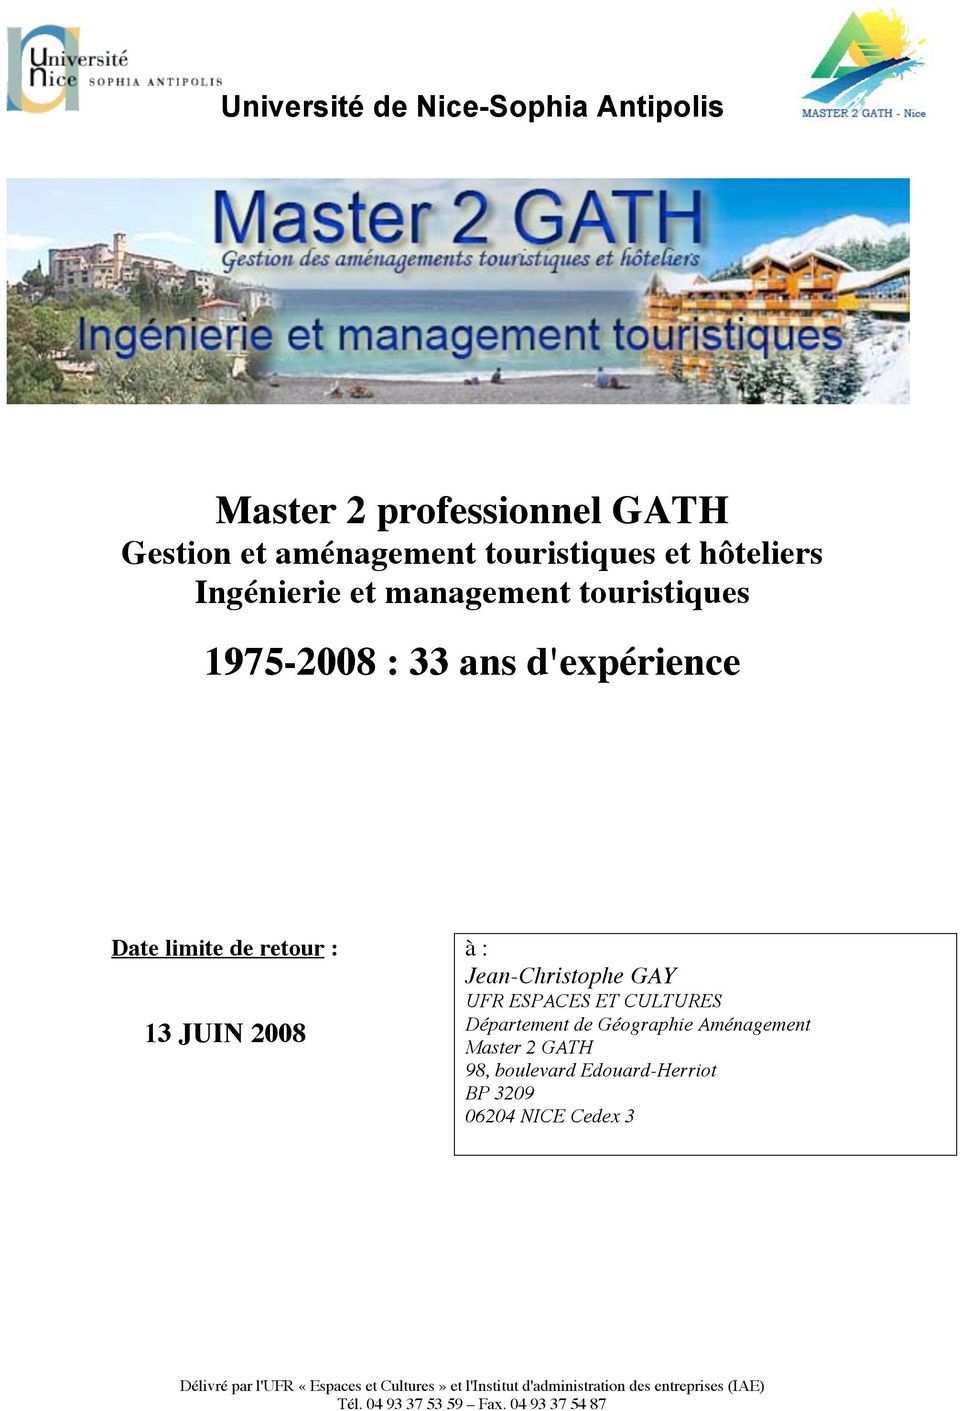 ESPACES ET CULTURES Département de Géographie Aménagement Master 2 GATH 98, boulevard Edouard-Herriot BP 3209 06204 NICE Cedex